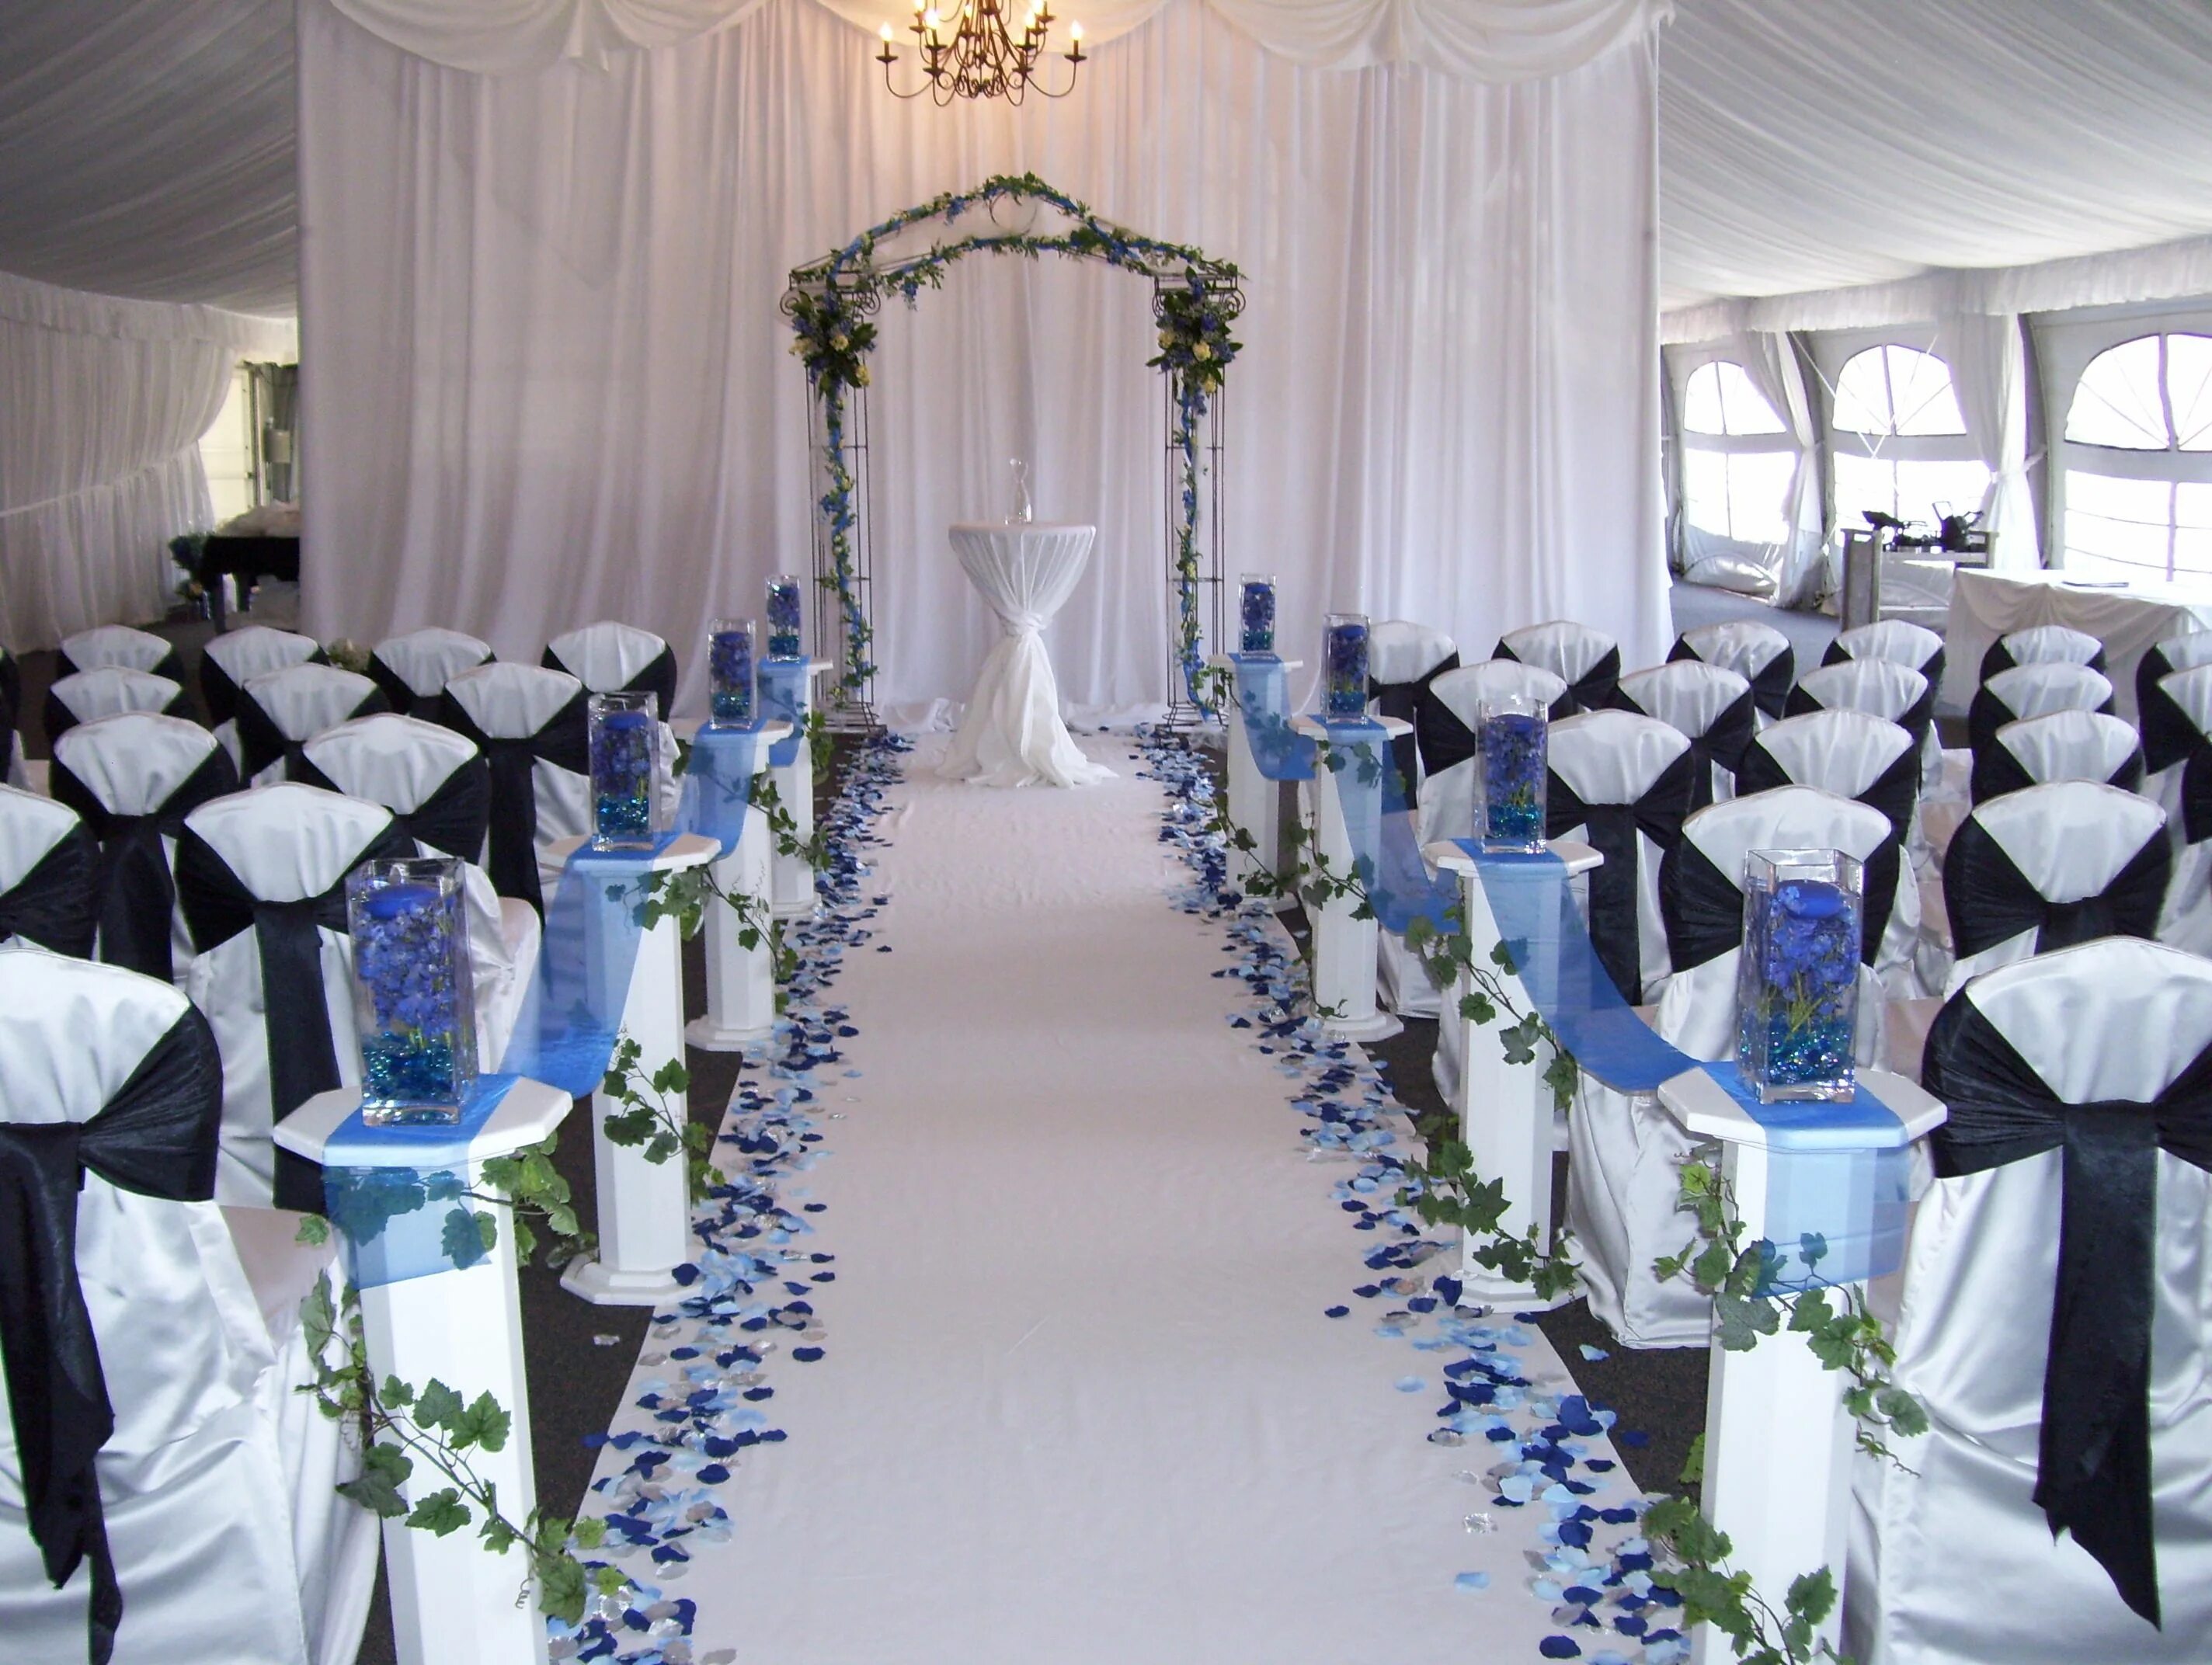 Где сделать свадебную. Свадебный зал. Декор свадьбы в синем цвете. Место для свадьбы. Банкетный зал в синих тонах.